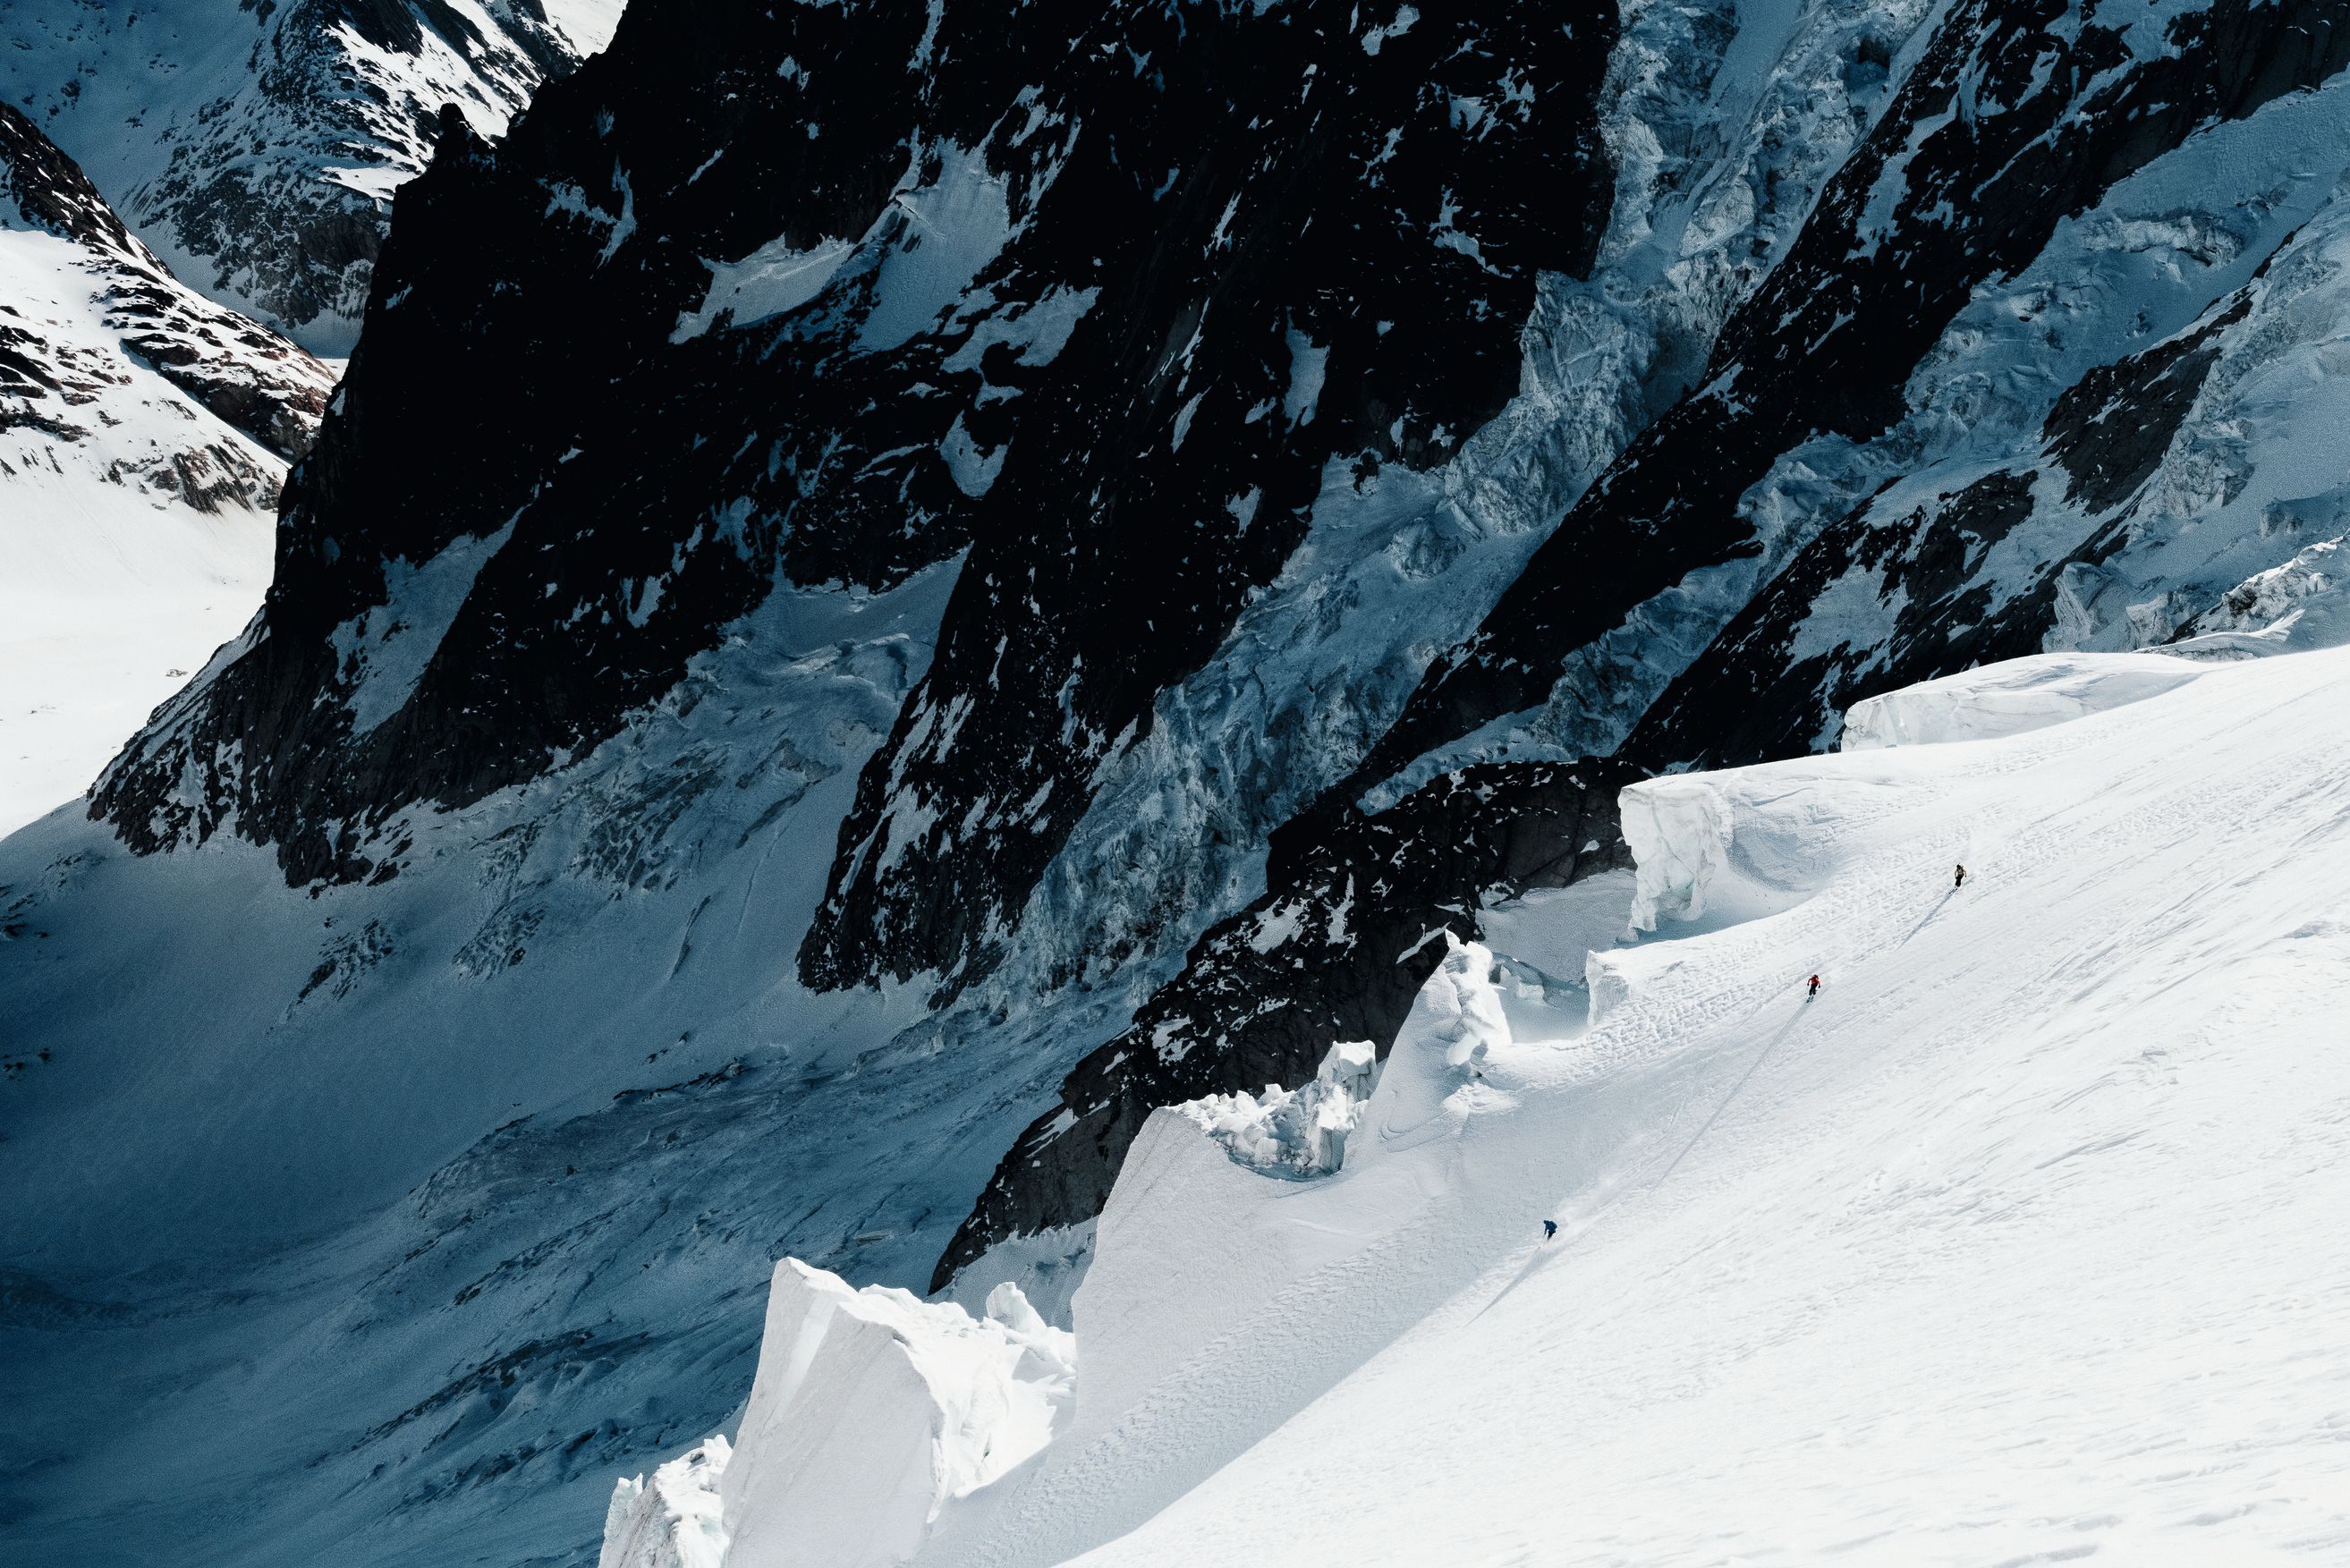 Les skieurs dévalent les pentes d'un glacier dans le Lötschental.